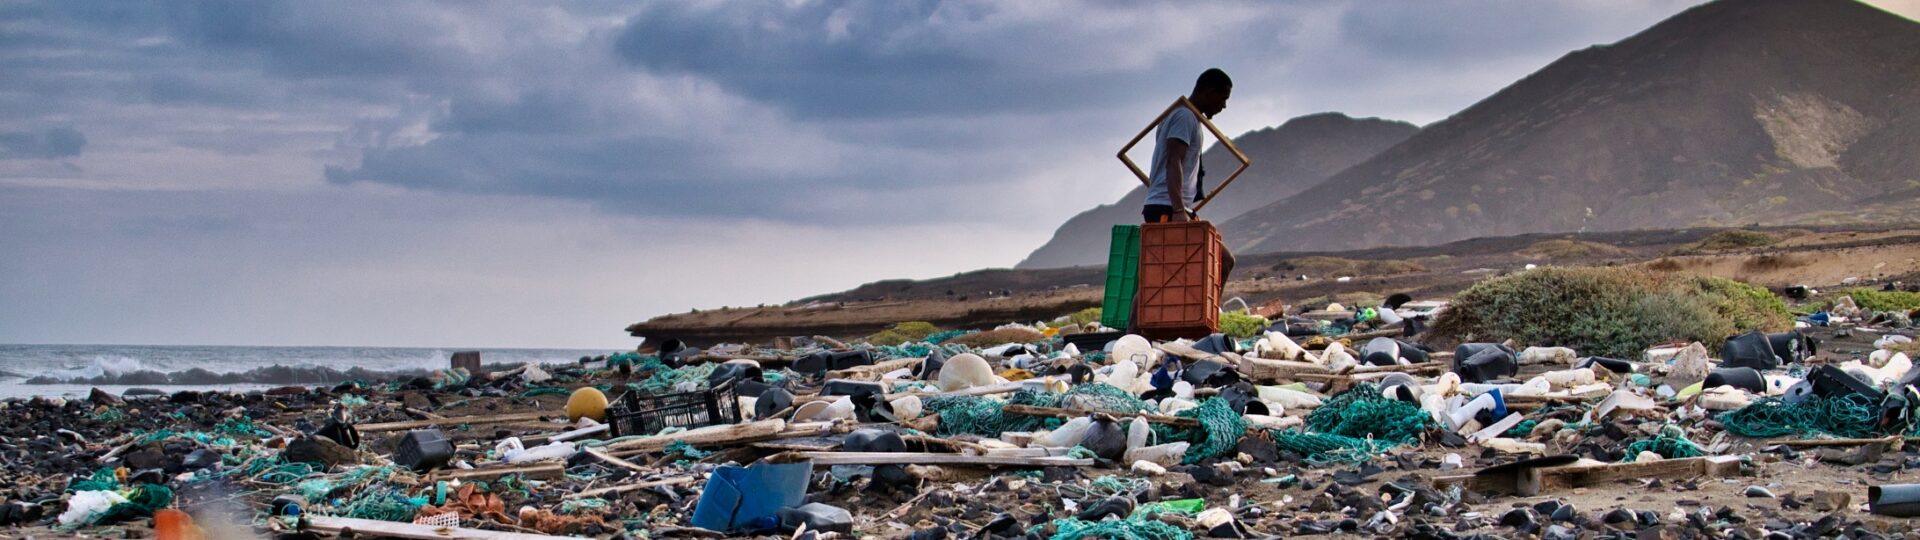 Plastic pollution in Santa Luzia - Cape Verde - Wiki Commons